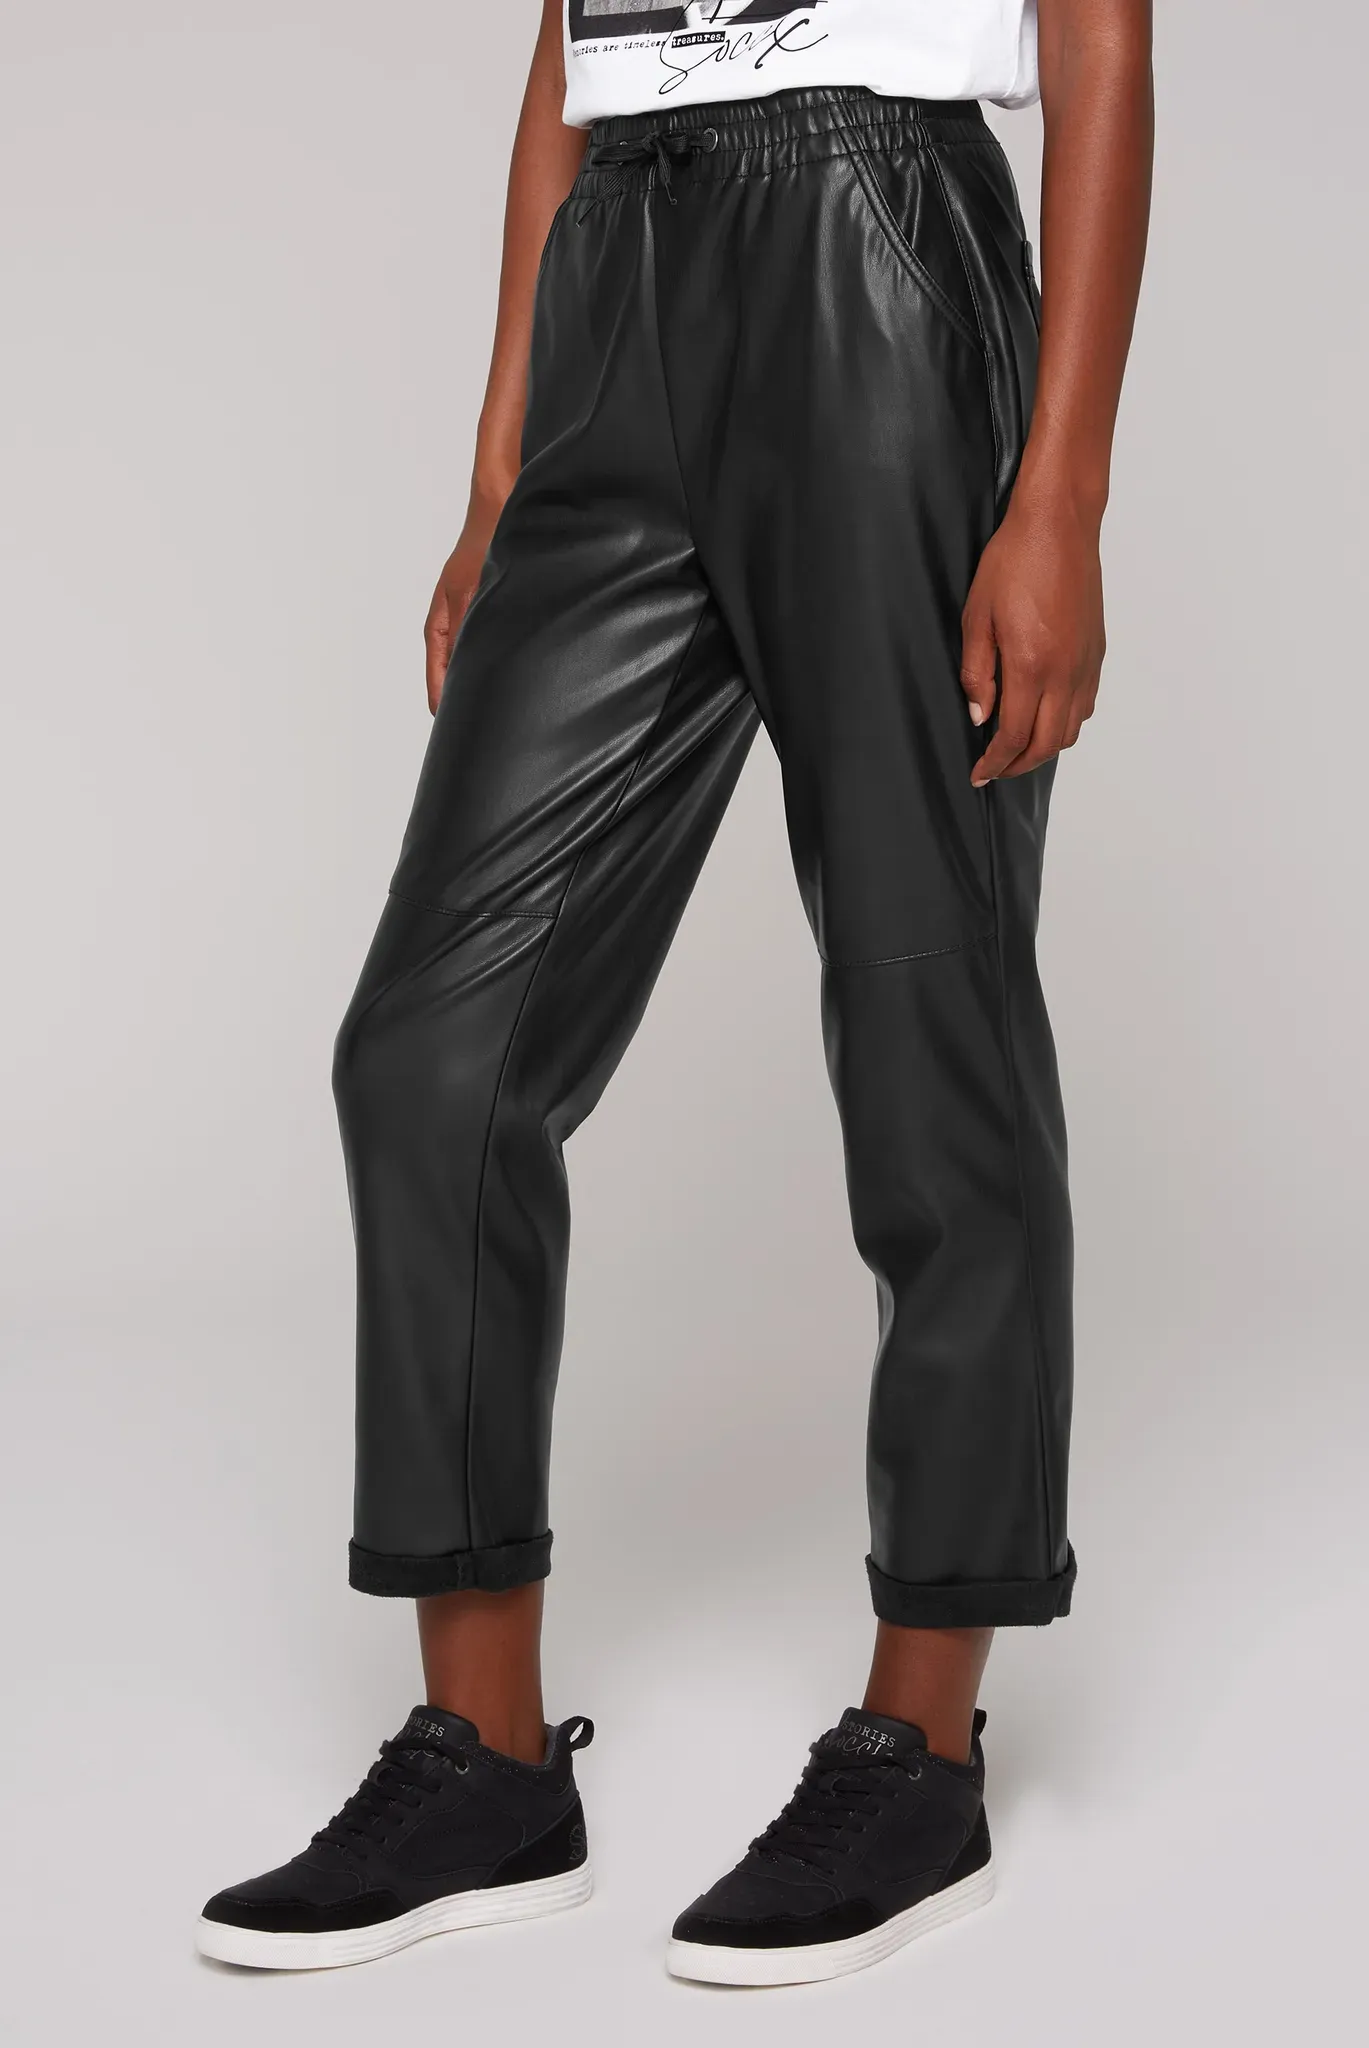 Lederimitathose SOCCX Gr. S, Normalgrößen, schwarz Damen Hosen Kunstlederhosen